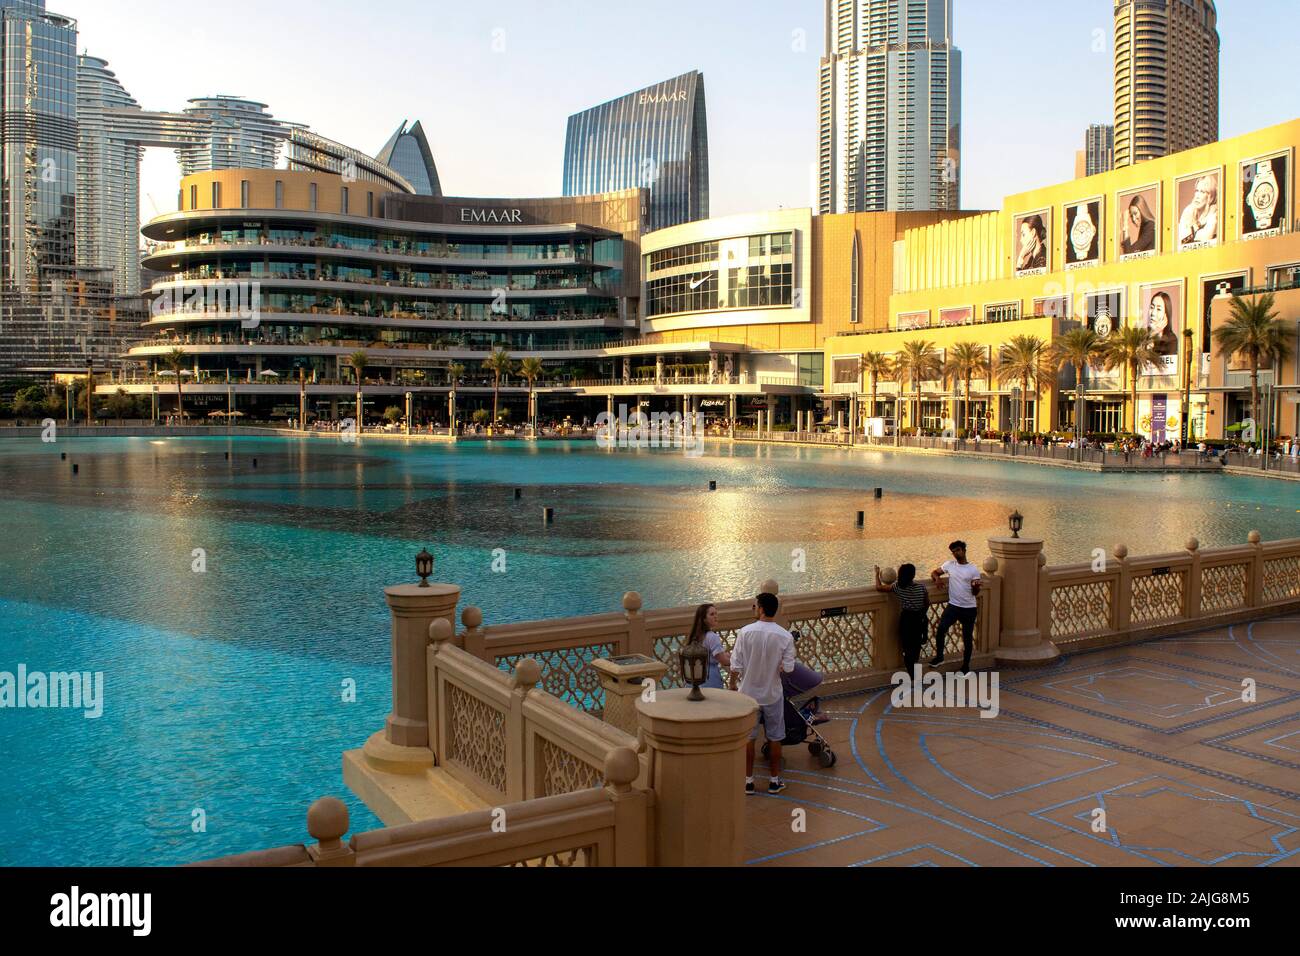 Dubaï / Émirats Arabes Unis - 5 novembre 2019 : le plus grand centre commercial du monde. Extérieur du centre commercial de Dubaï avec touristes et piscine. Magnifique centre-ville de Dubaï Banque D'Images